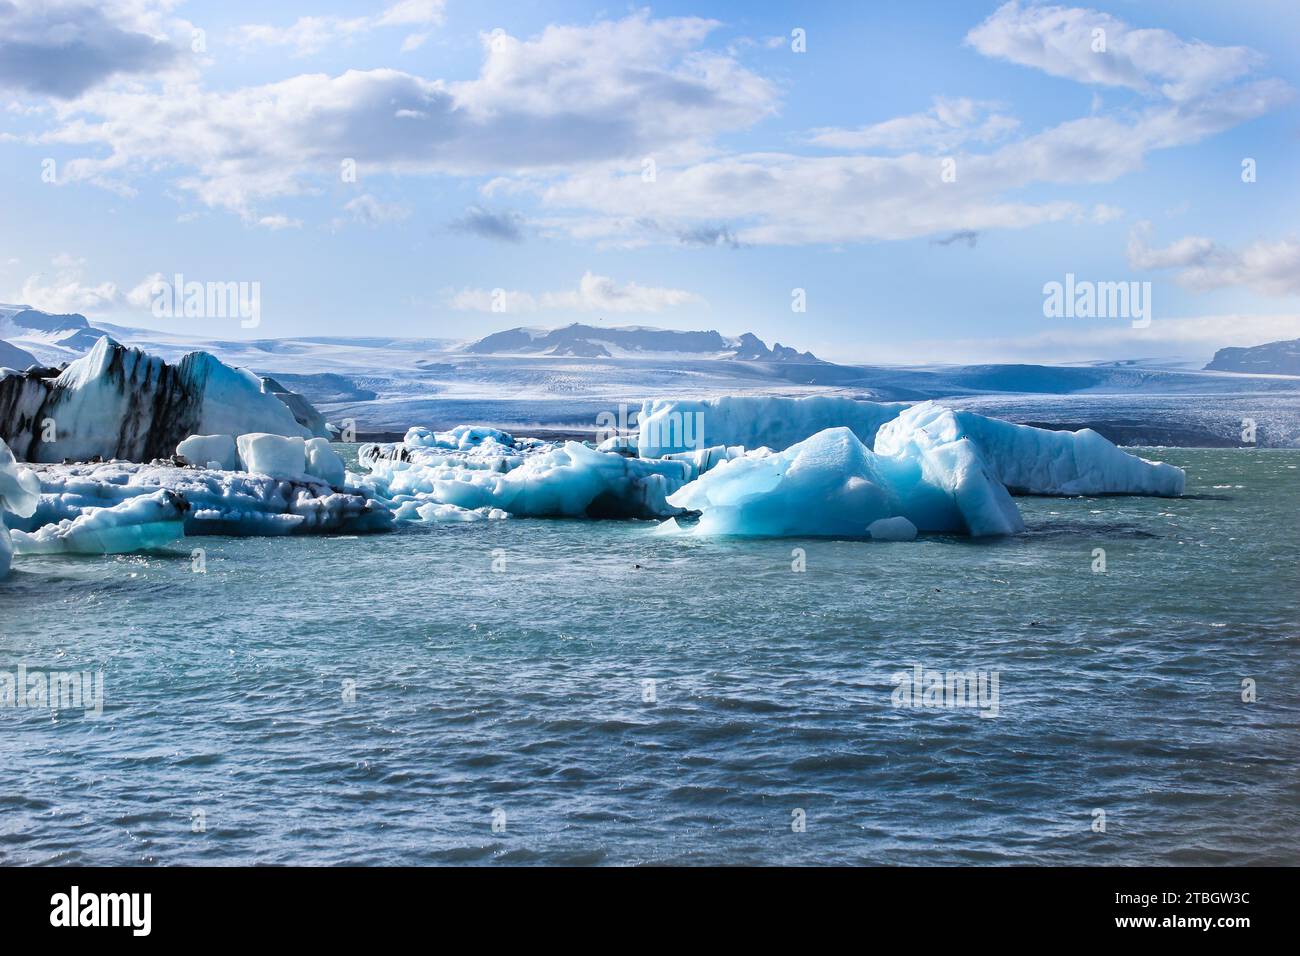 Catturare la bellezza senza tempo dei ghiacciai islandesi, Taube l'arte ghiacciata della natura incontra una serenità mozzafiato Stockfoto